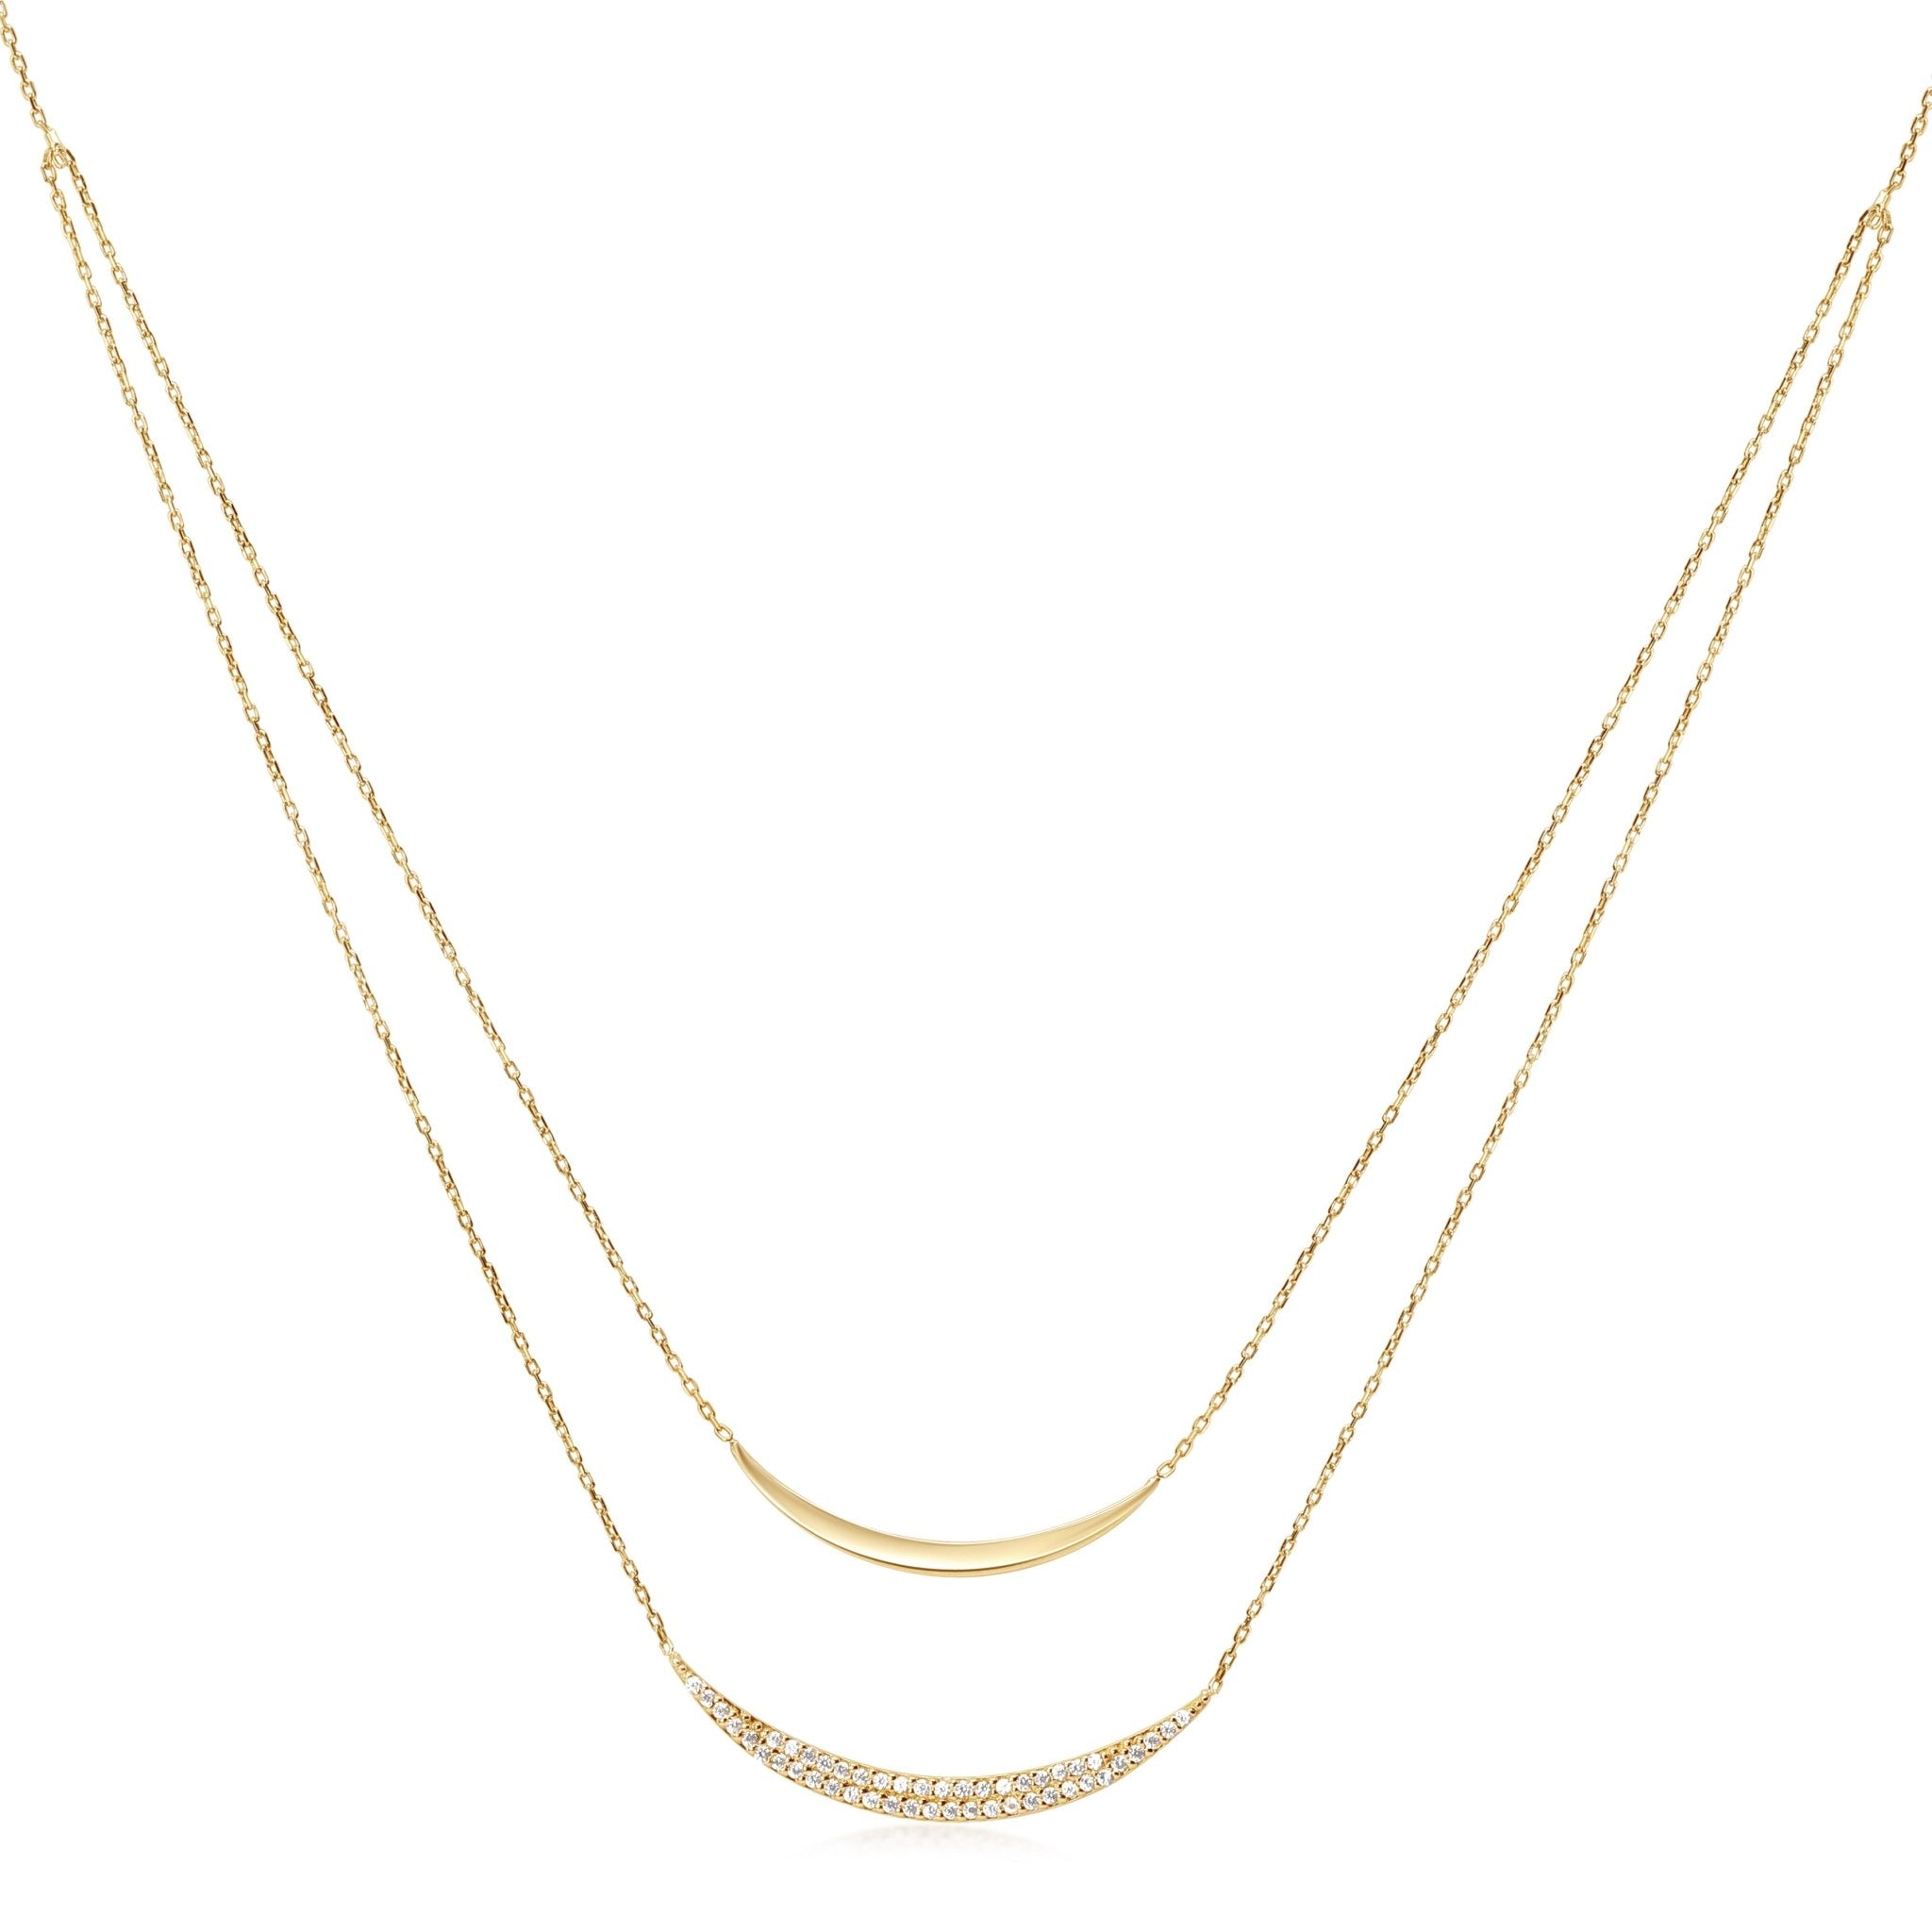 Diamond Double Curve Layering Necklace Necklaces Estella Collection #product_description# 17786 14k Birthstone Diamond #tag4# #tag5# #tag6# #tag7# #tag8# #tag9# #tag10#